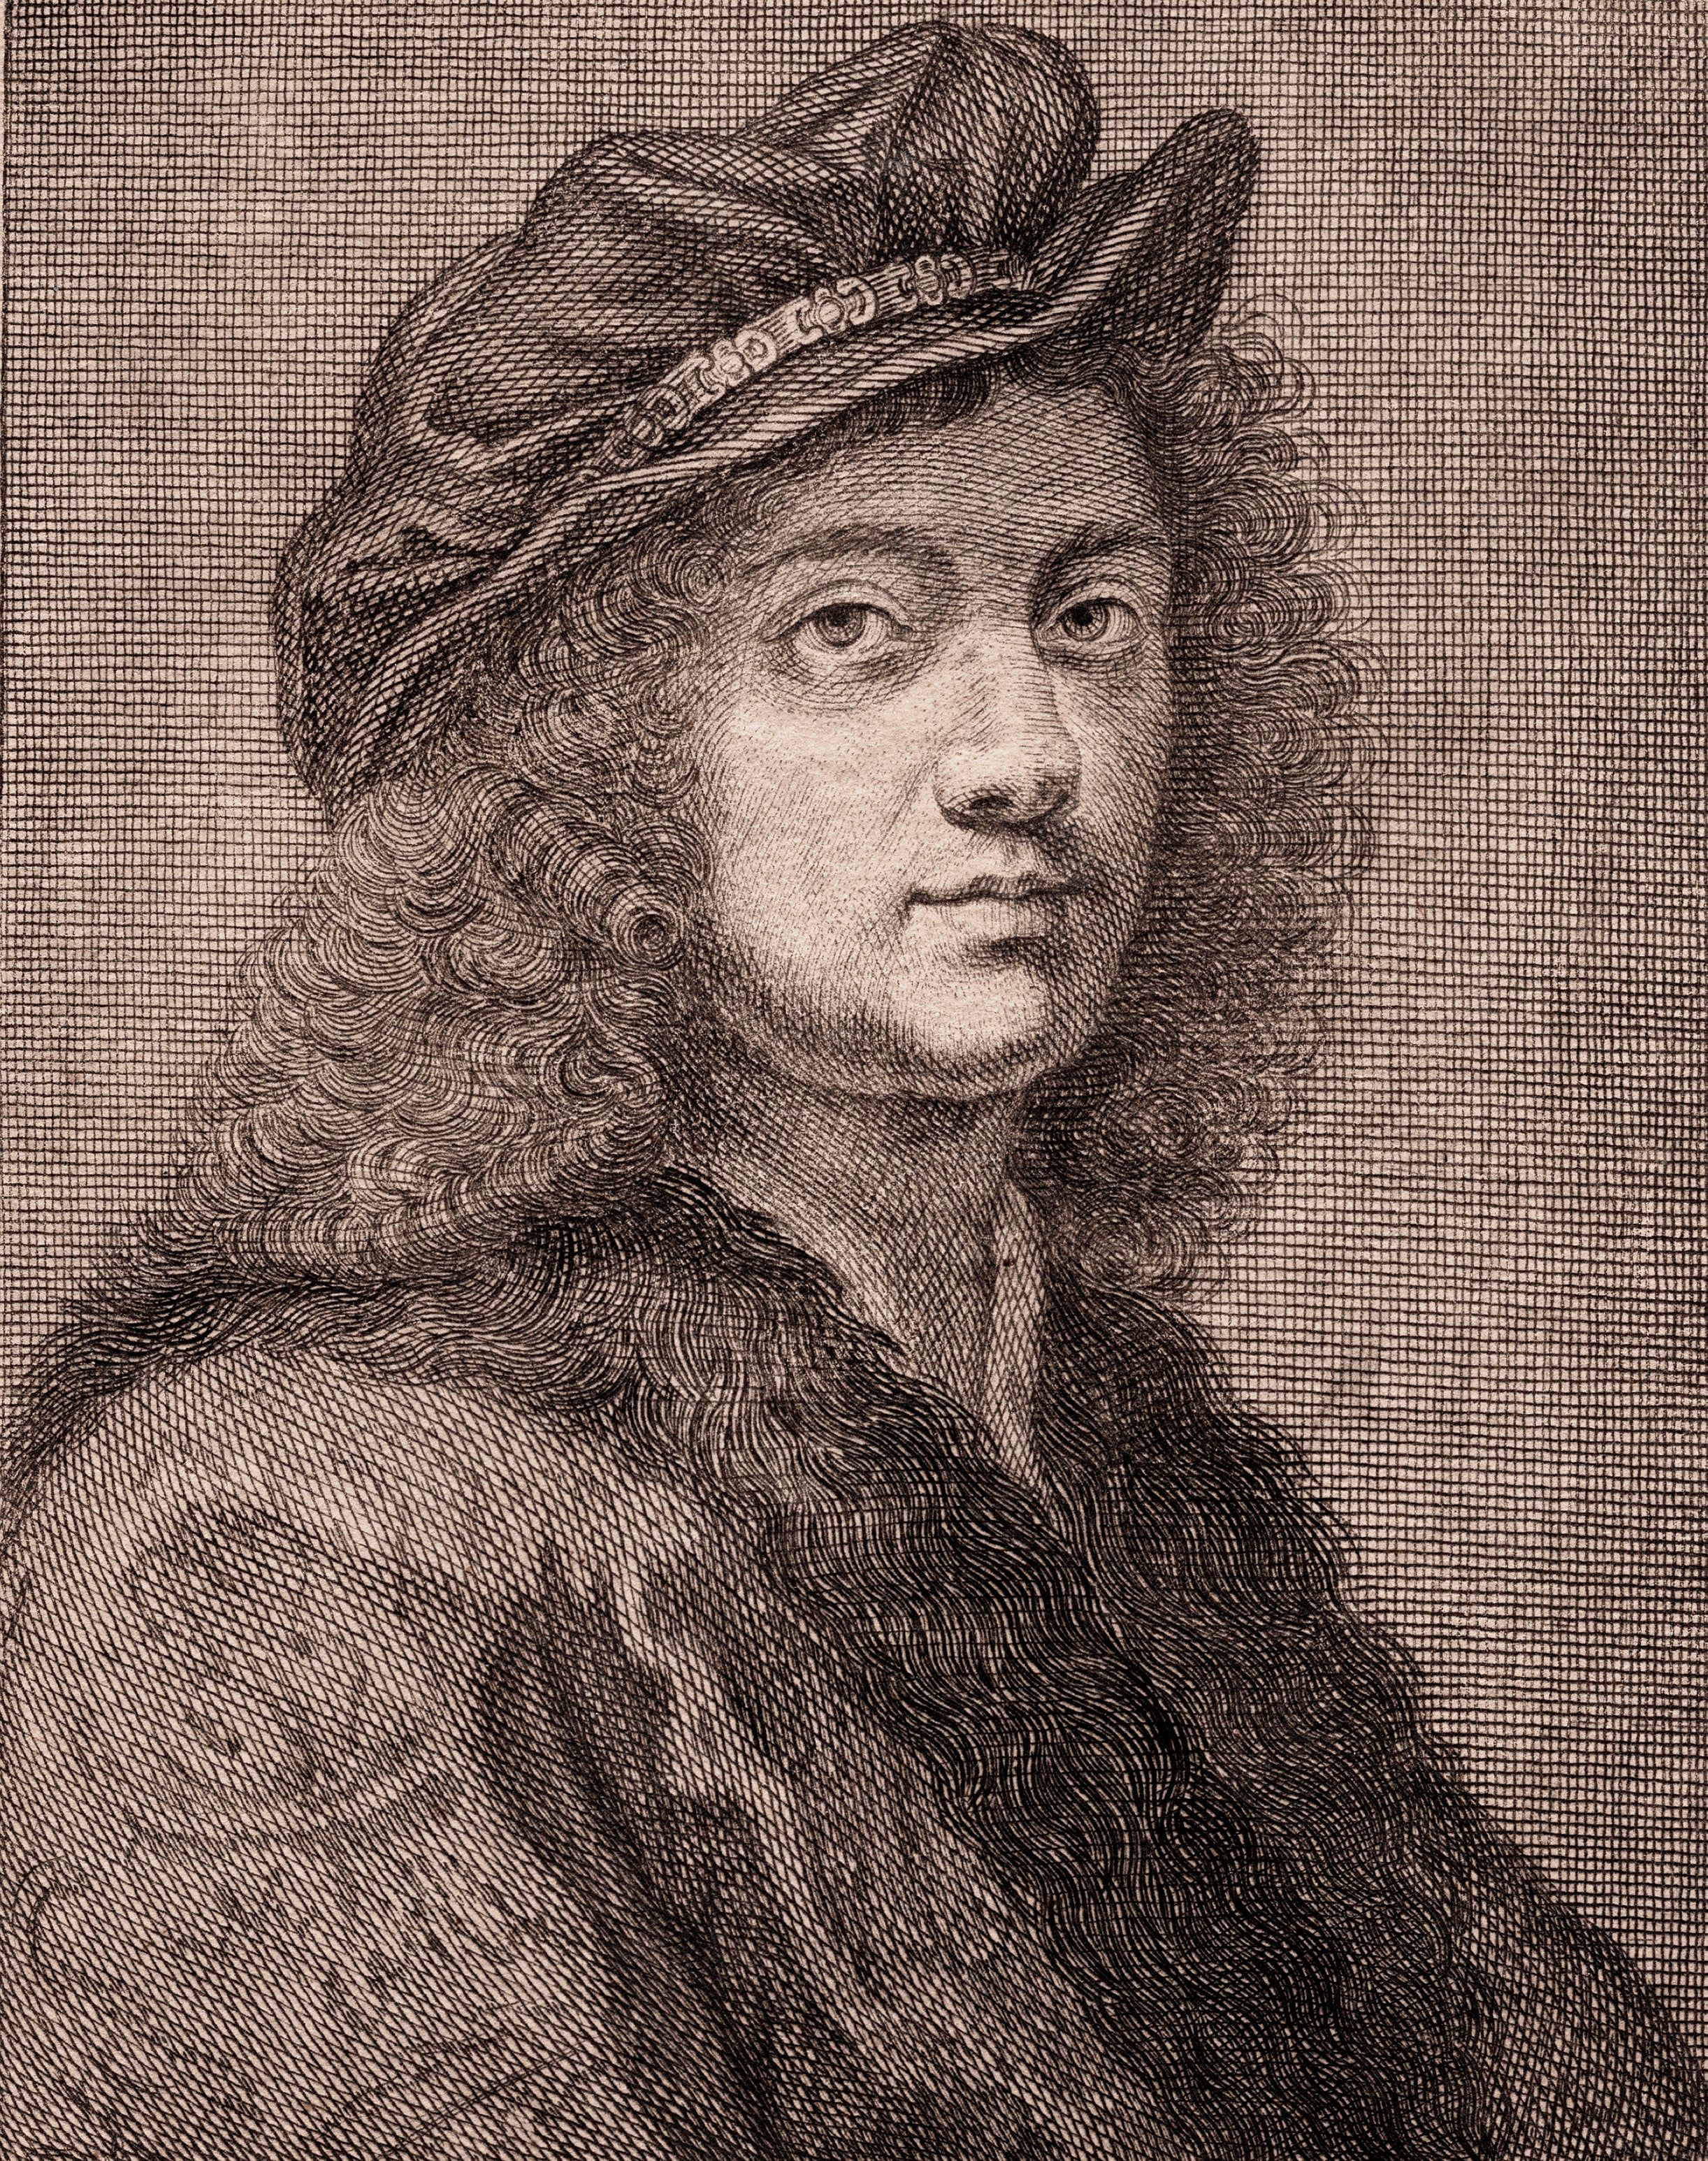 Ritratto a stampa di Giovan Battista Gaulli, detto il Baciccio, tratto dal suo Autoritratto conservato agli Uffizi